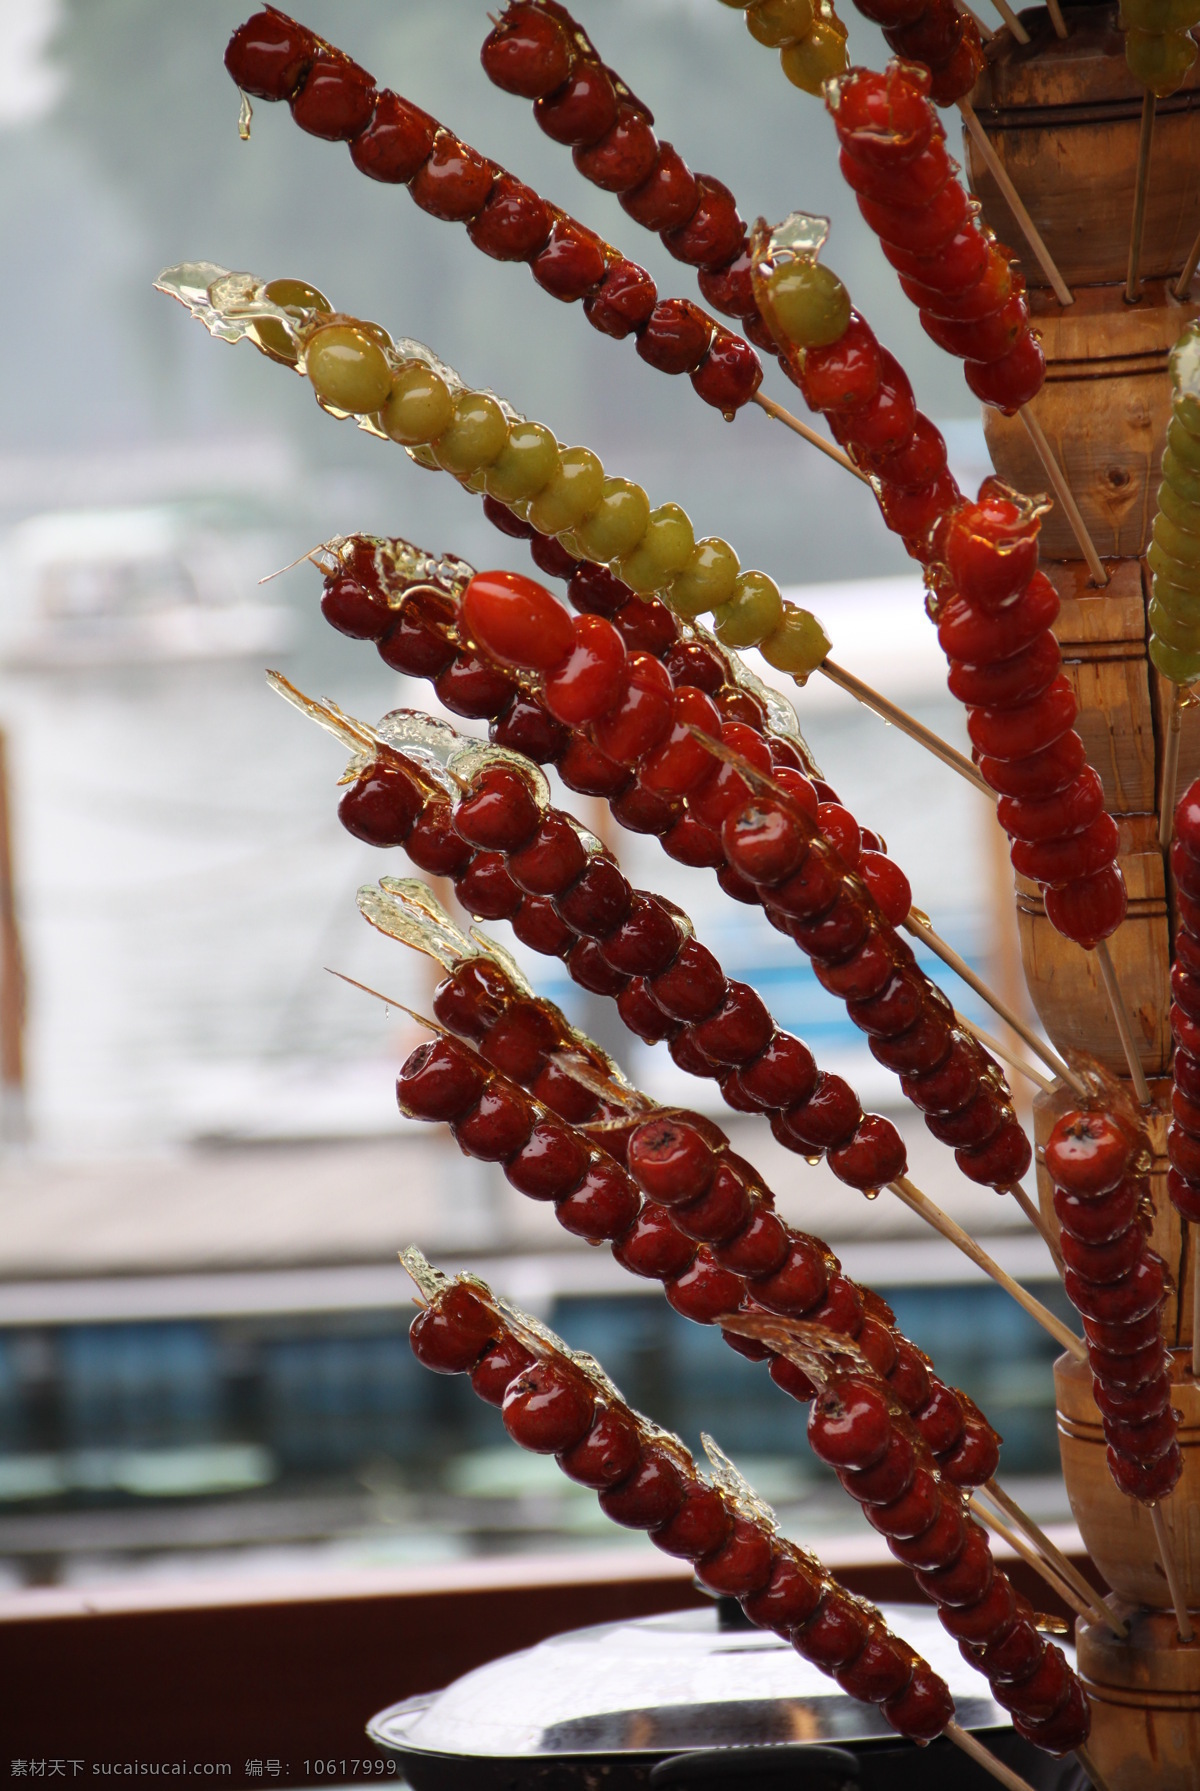 冰糖葫芦 糖葫芦 糖球 糖葫芦串 山楂 餐饮美食 传统美食 食品